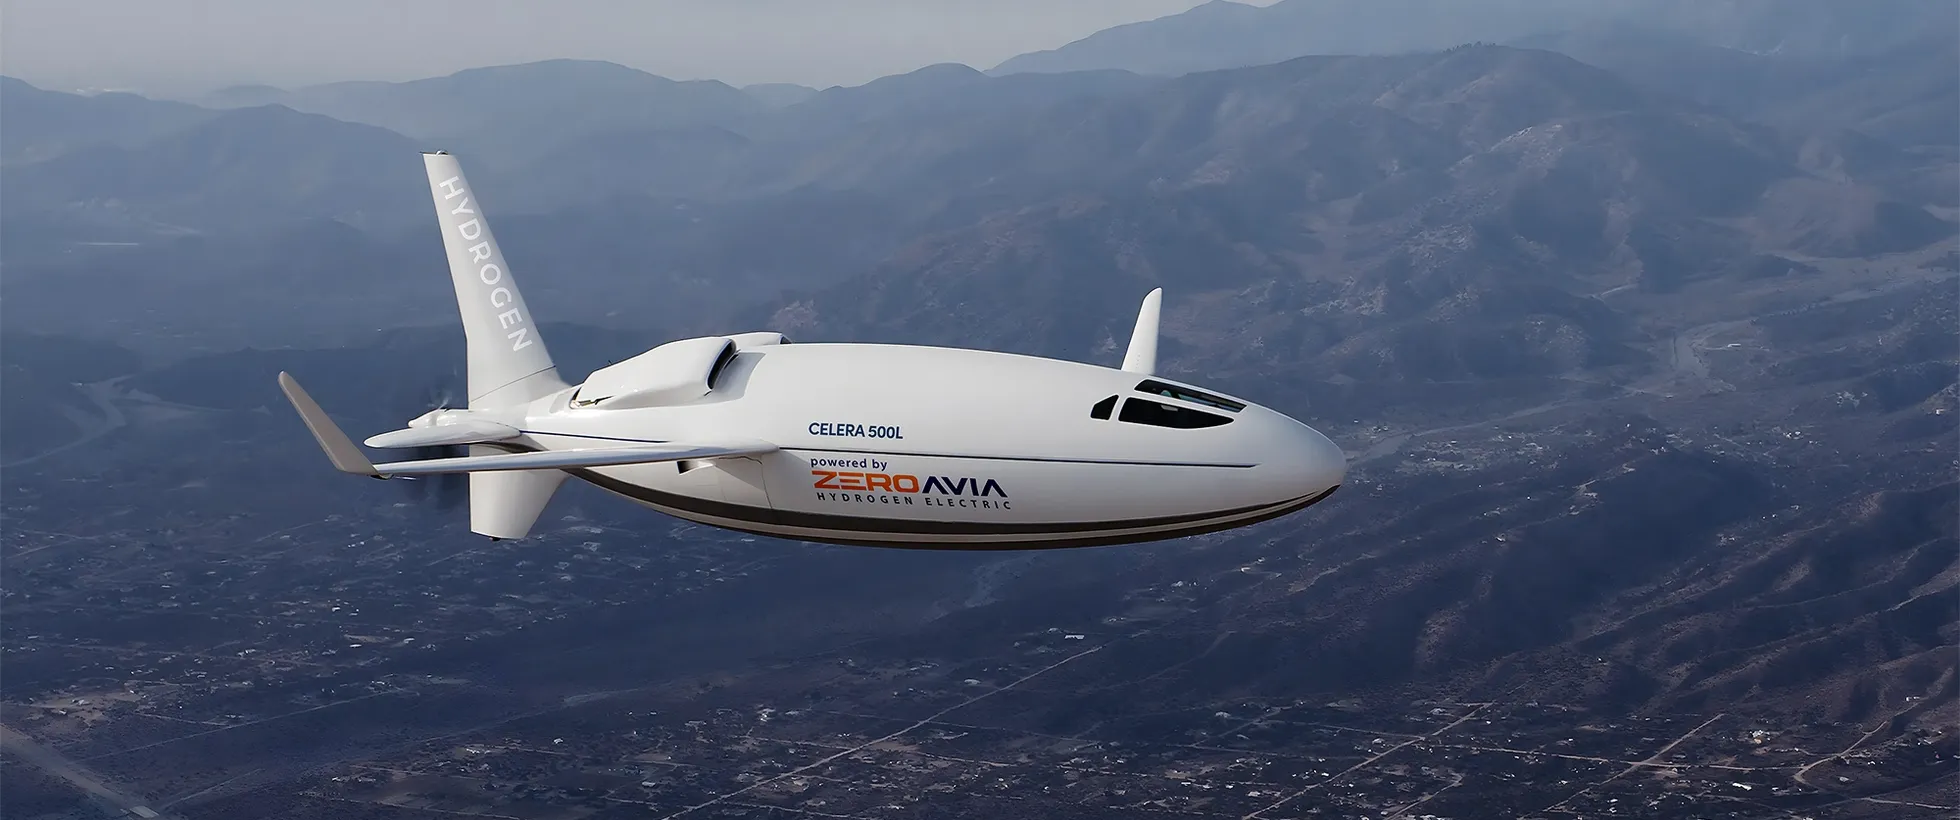 Celera 500L rendering against sky with ZeroAvia logo on side